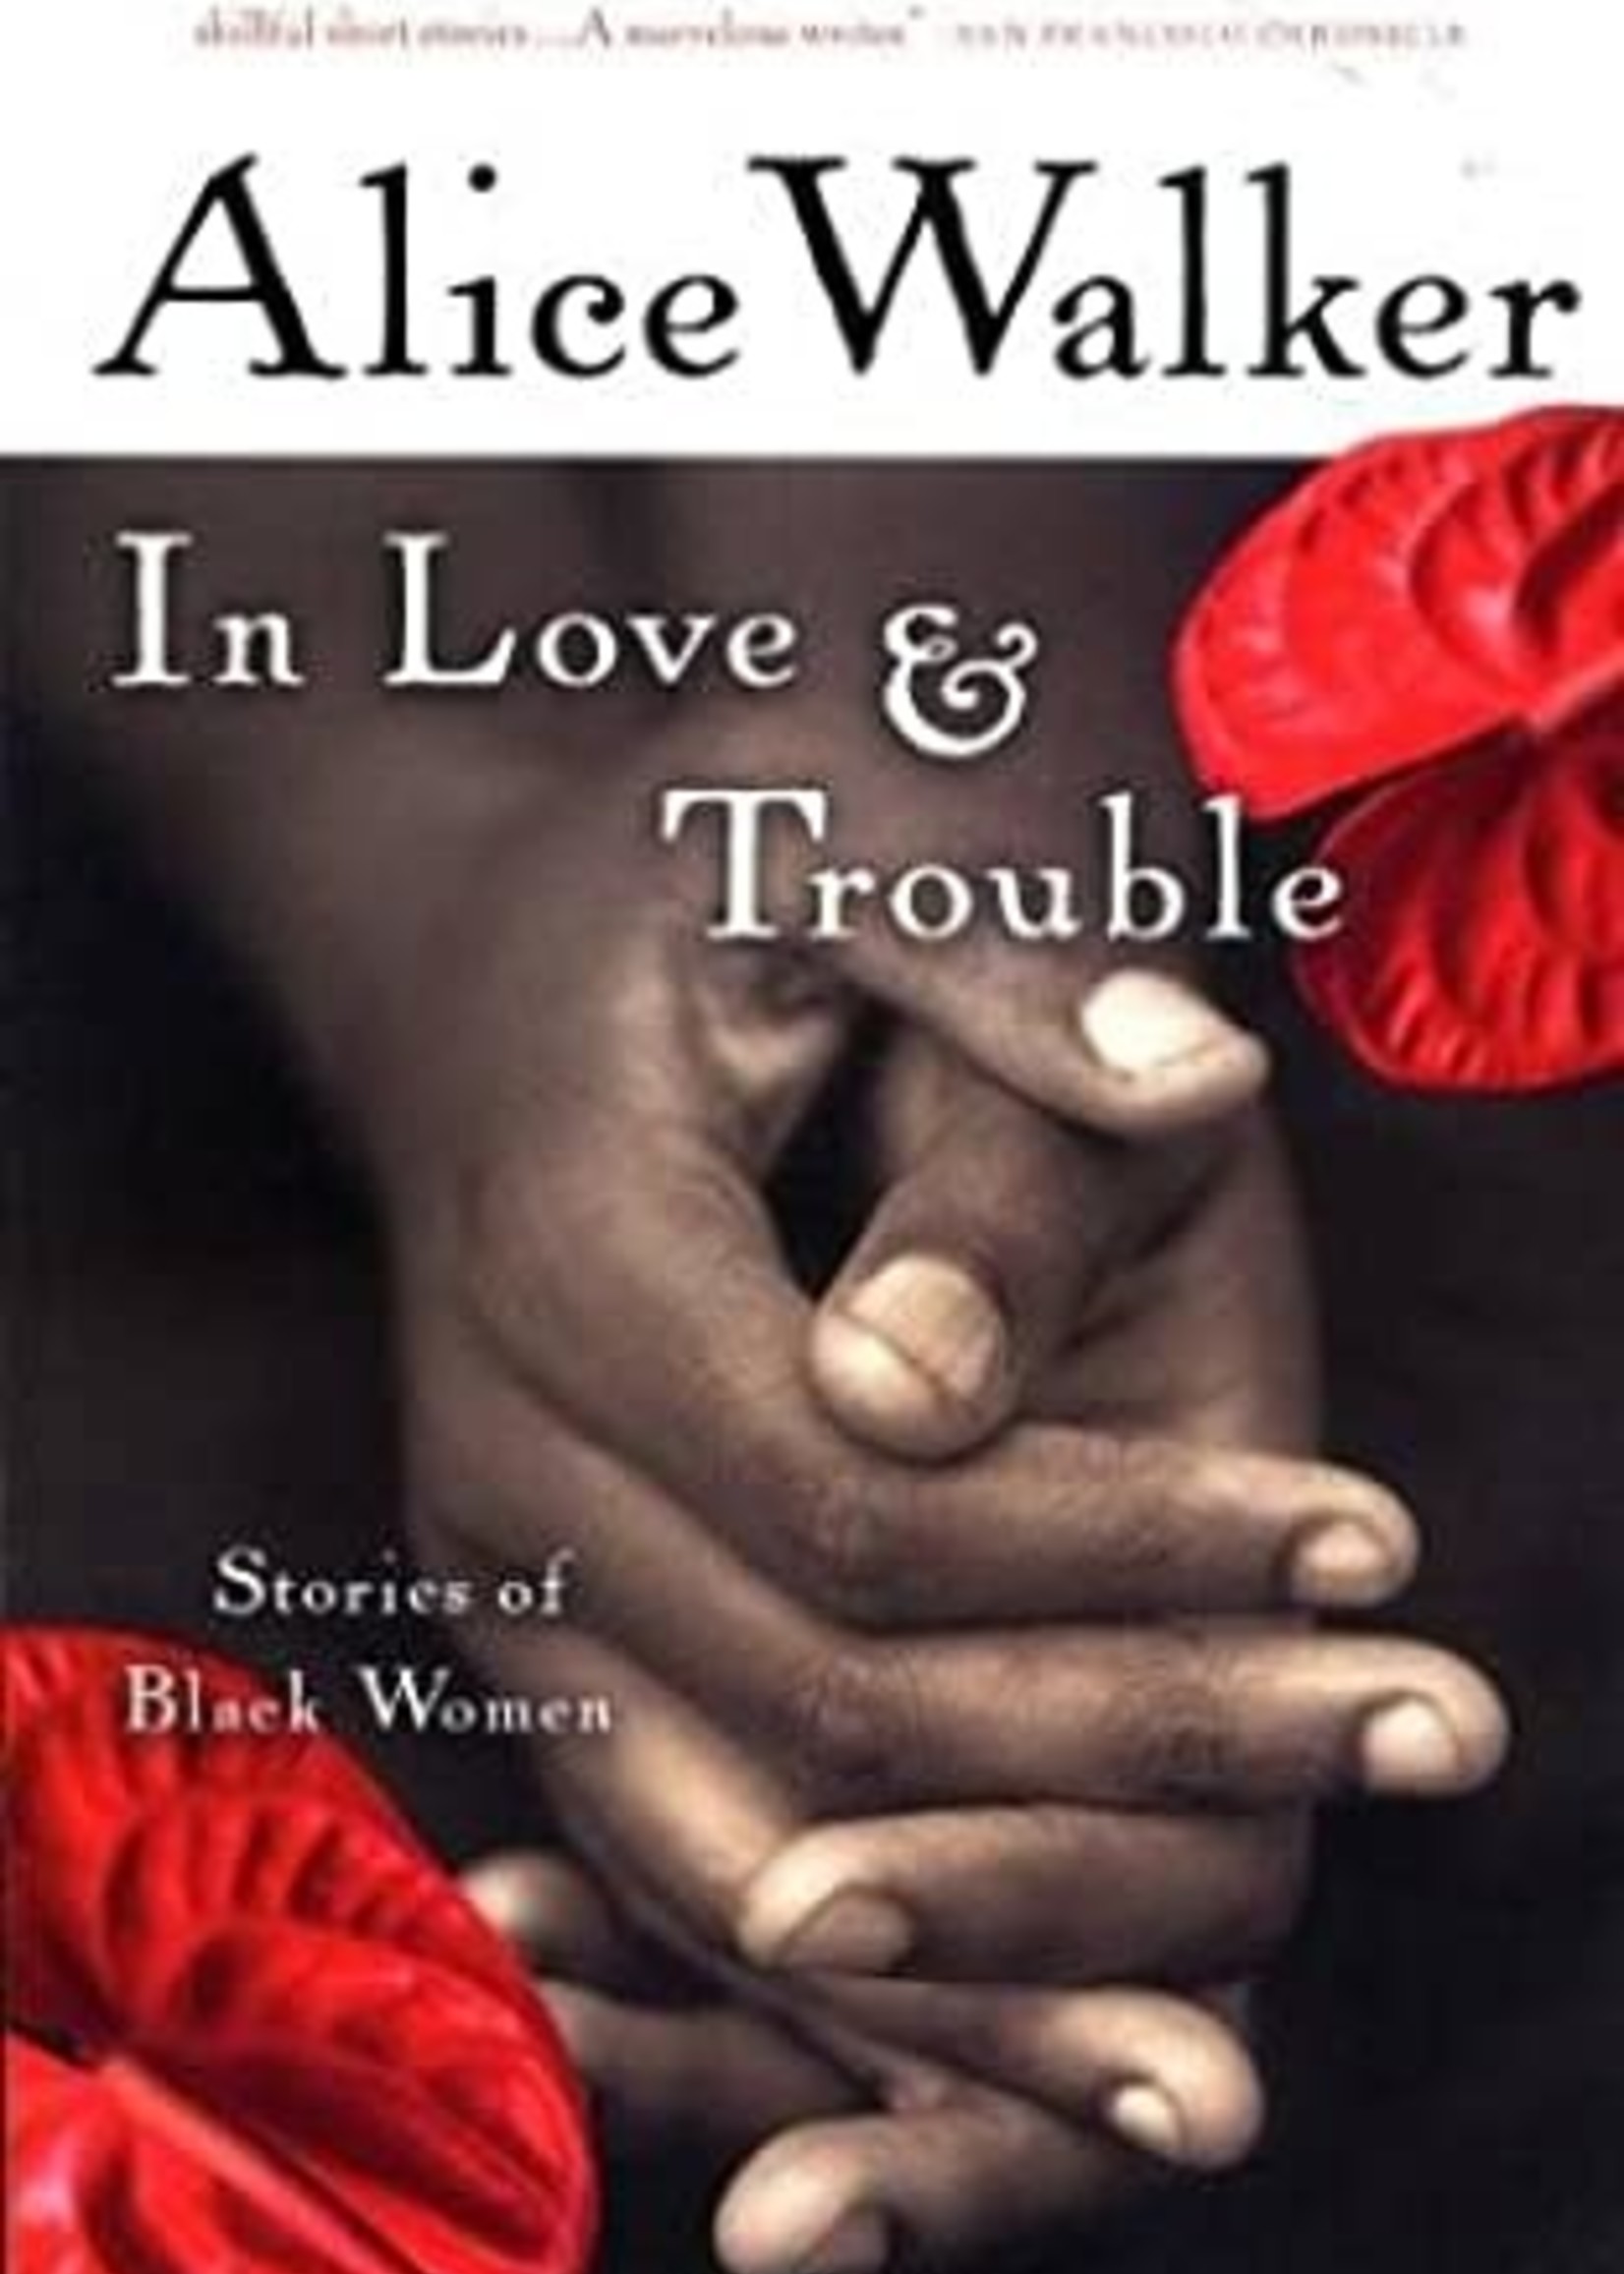 In Love & Trouble by Alice Walker